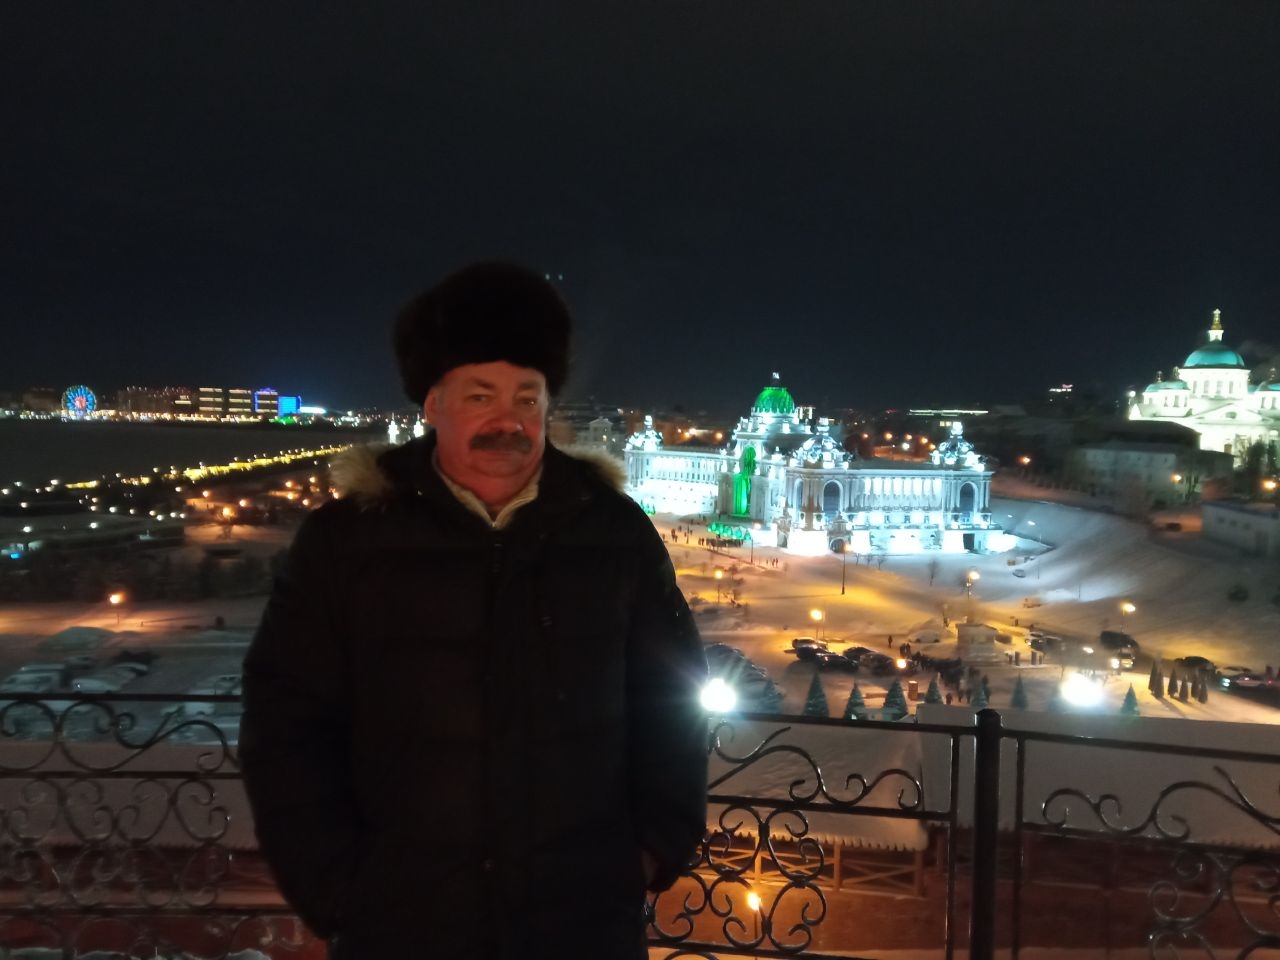 Казанский кремль Казань, Россия